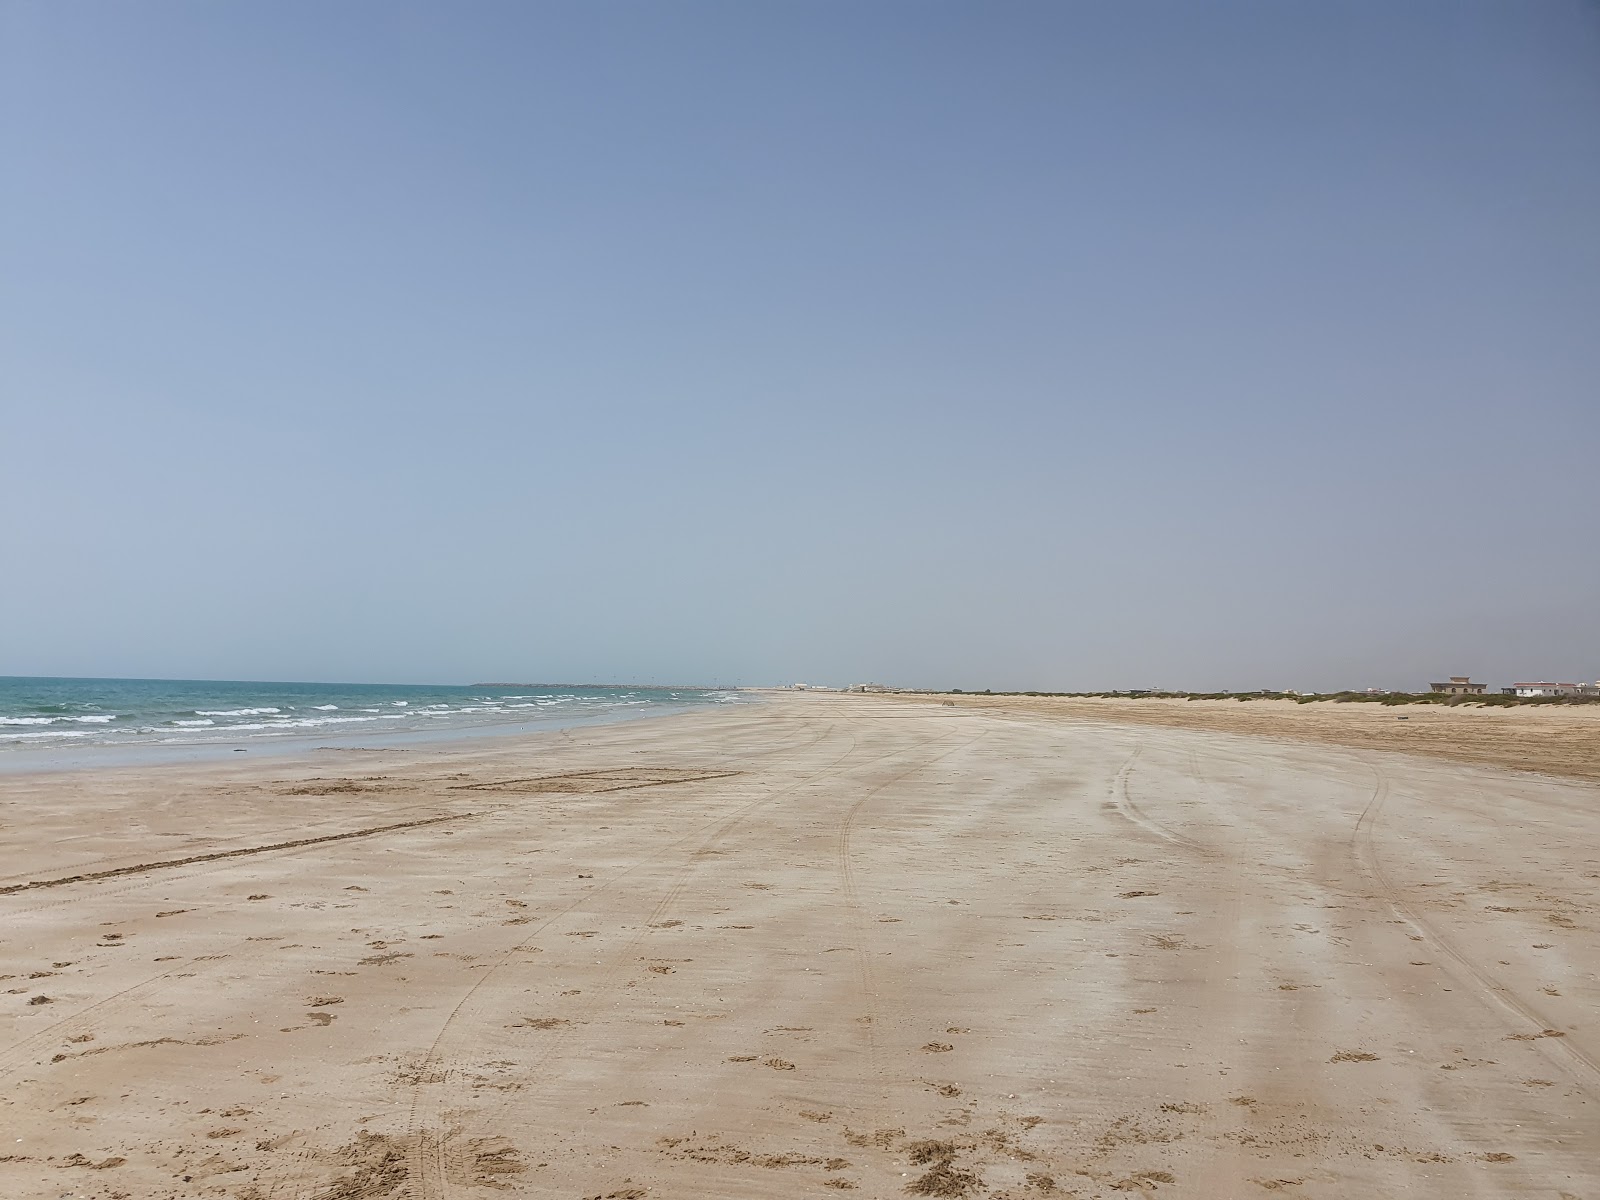 Fotografie cu Al Rams beach cu o suprafață de nisip strălucitor